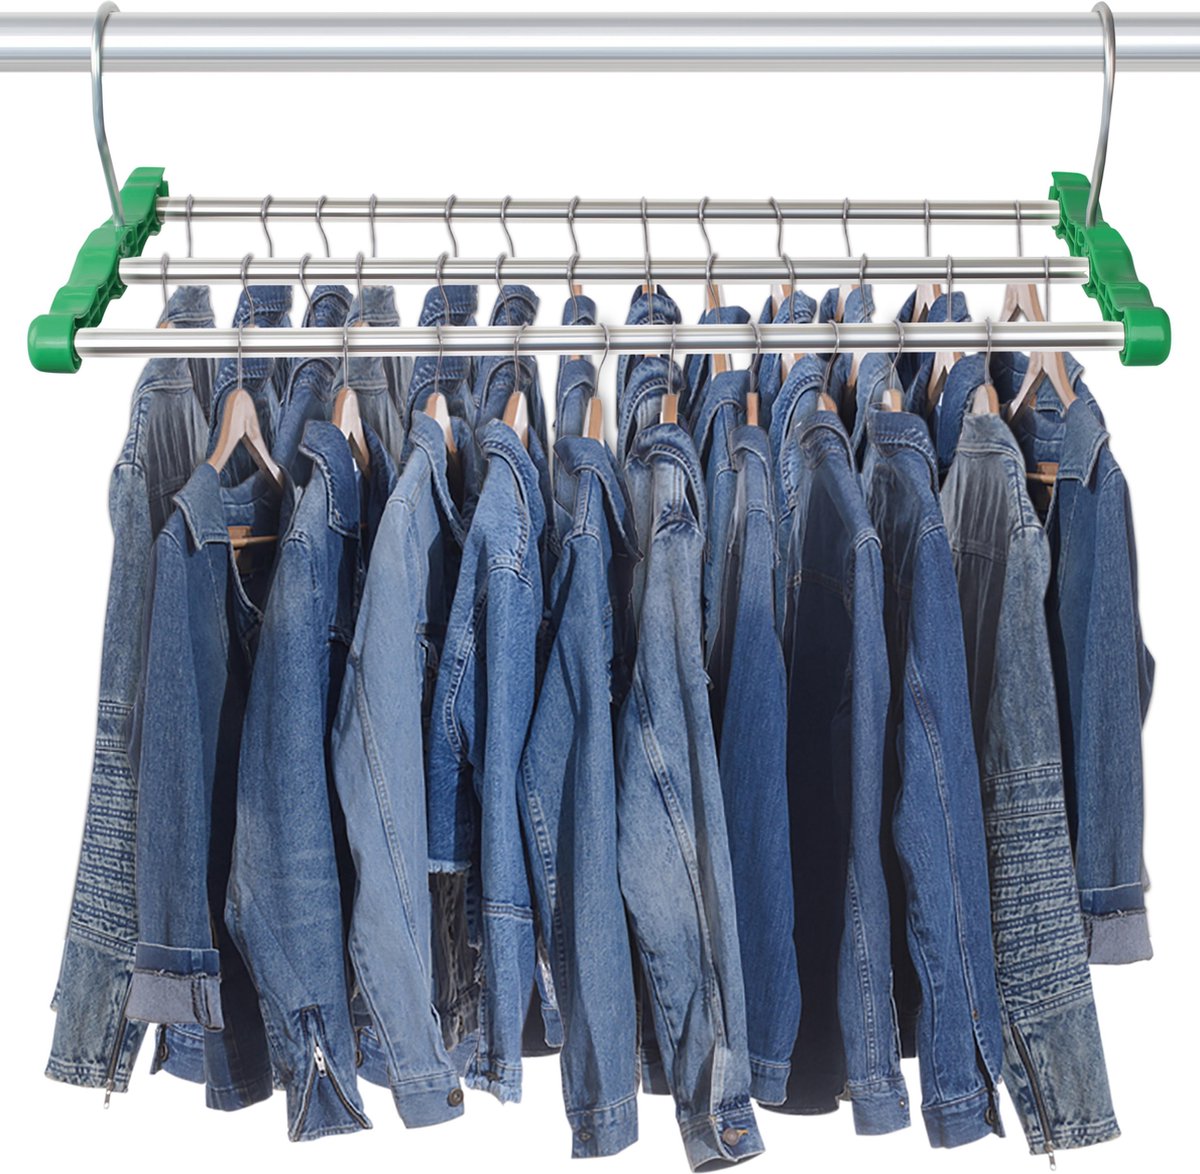 Multihanger zorg voor extra opbergruimte in je kledingkast - kledingrek - kledinghanger - kleerhanger